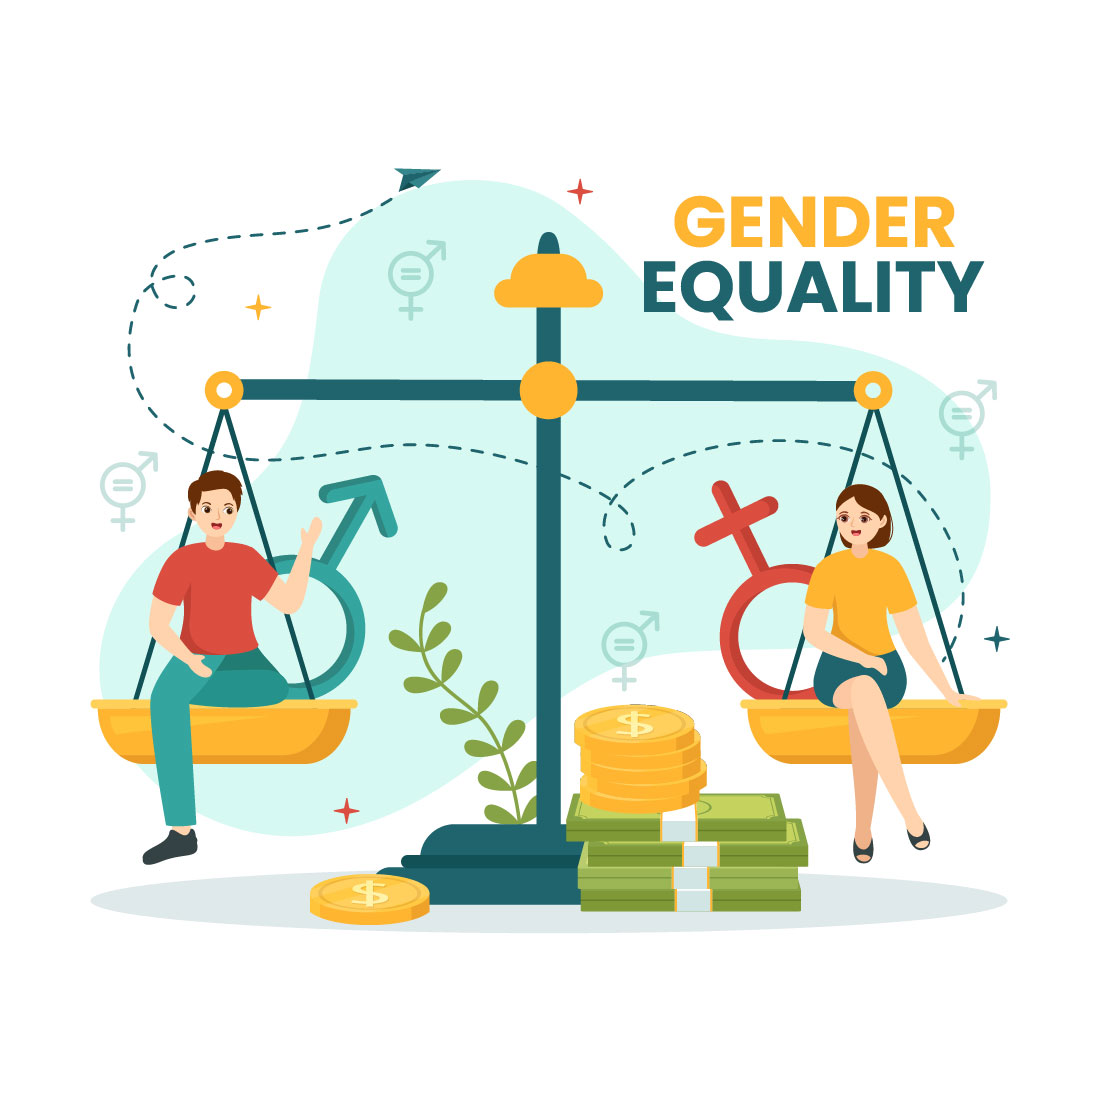 12 Gender Equality Vector Illustration cover image.